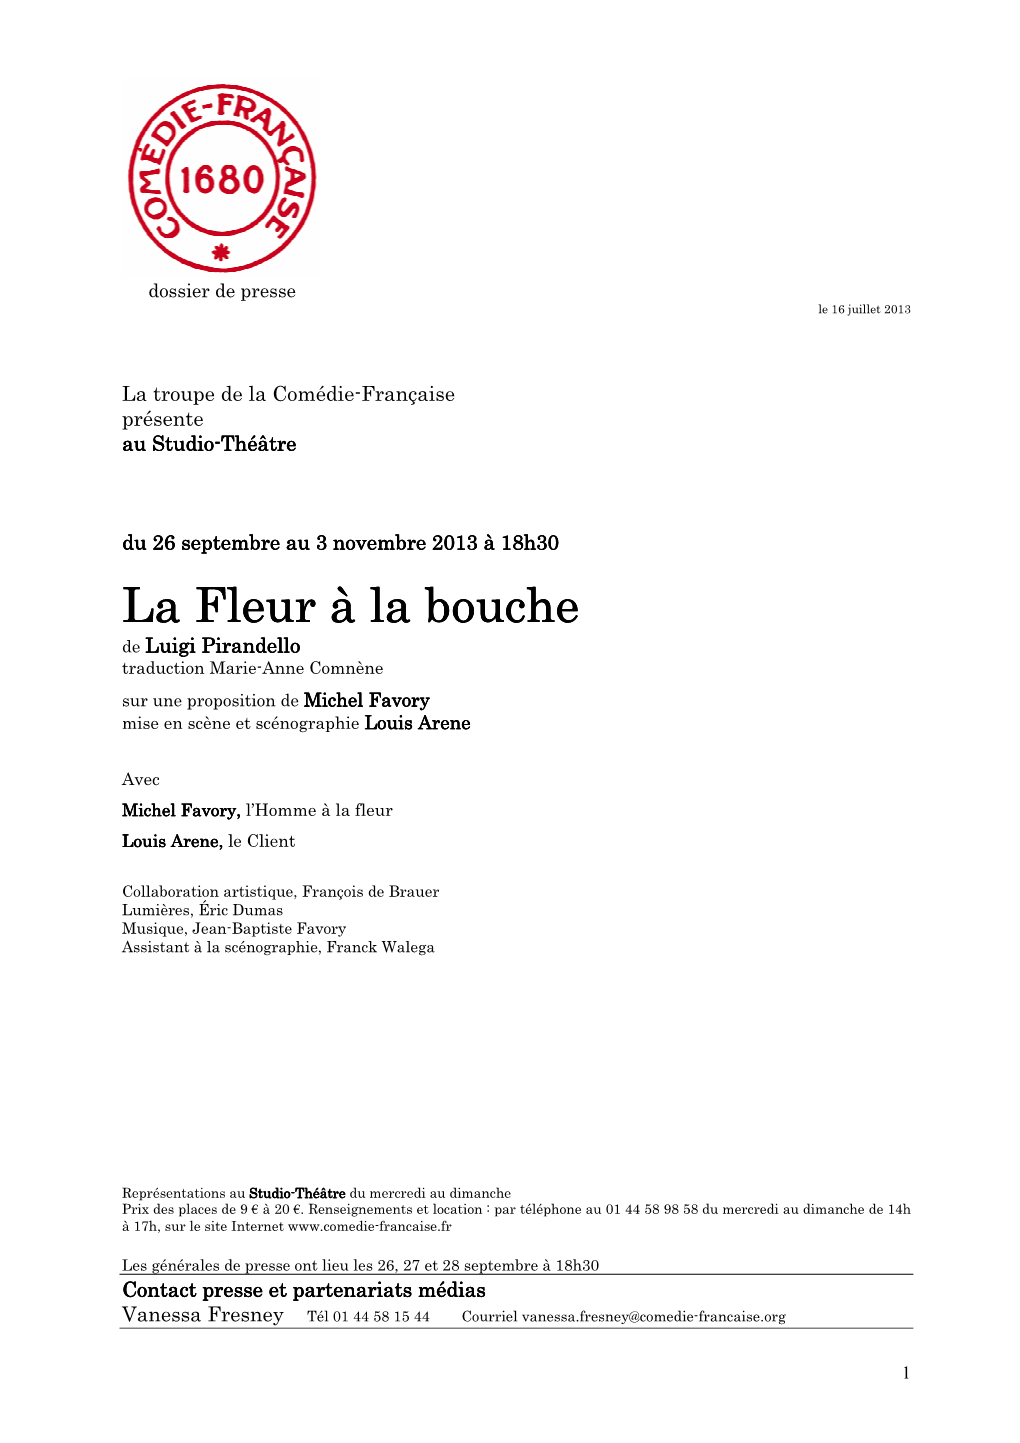 Dossier De Presse La Fleur À La Bouche 13/14